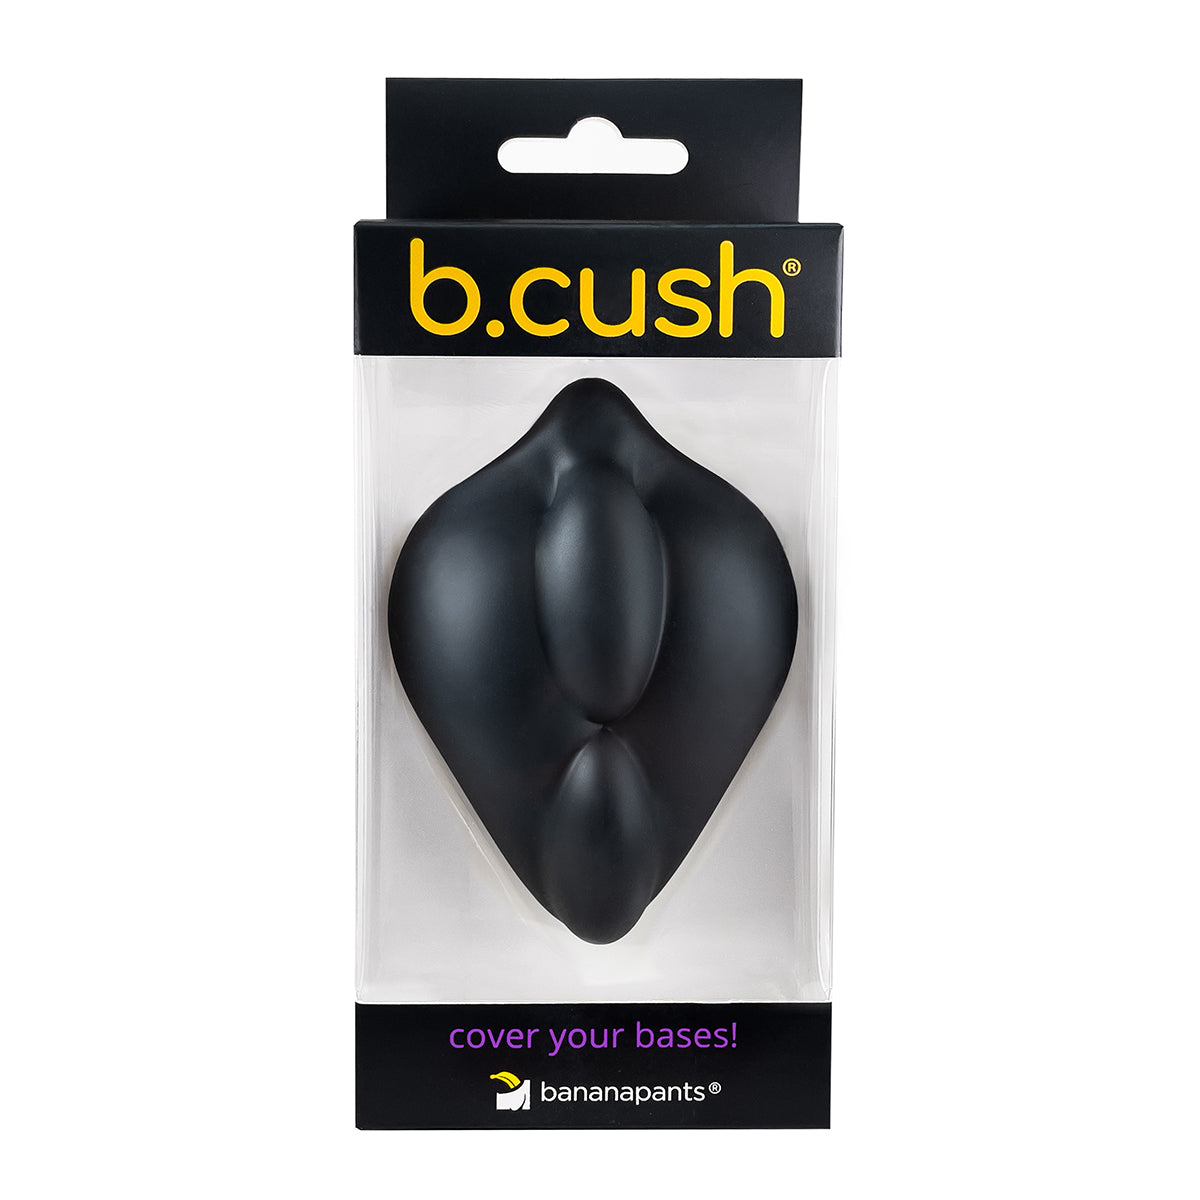 B.Cush by Banana Pants - Black